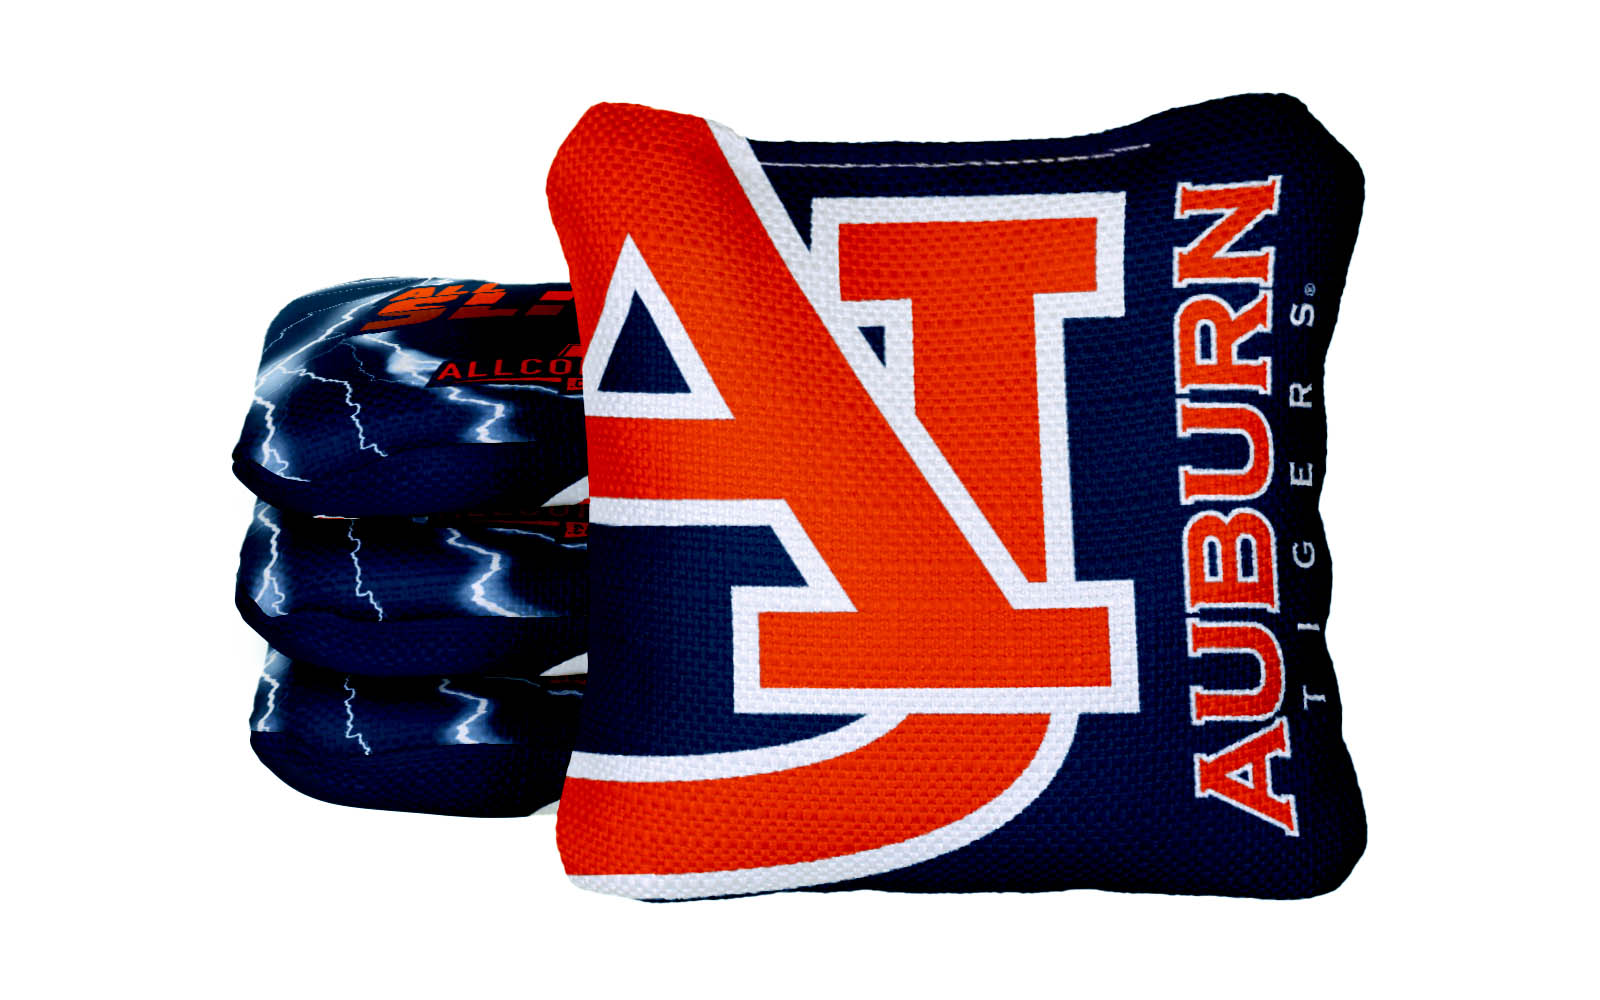 Officially Licensed Collegiate Cornhole Bags - AllCornhole All-Slide 2.0 - Set of 4 - Auburn University